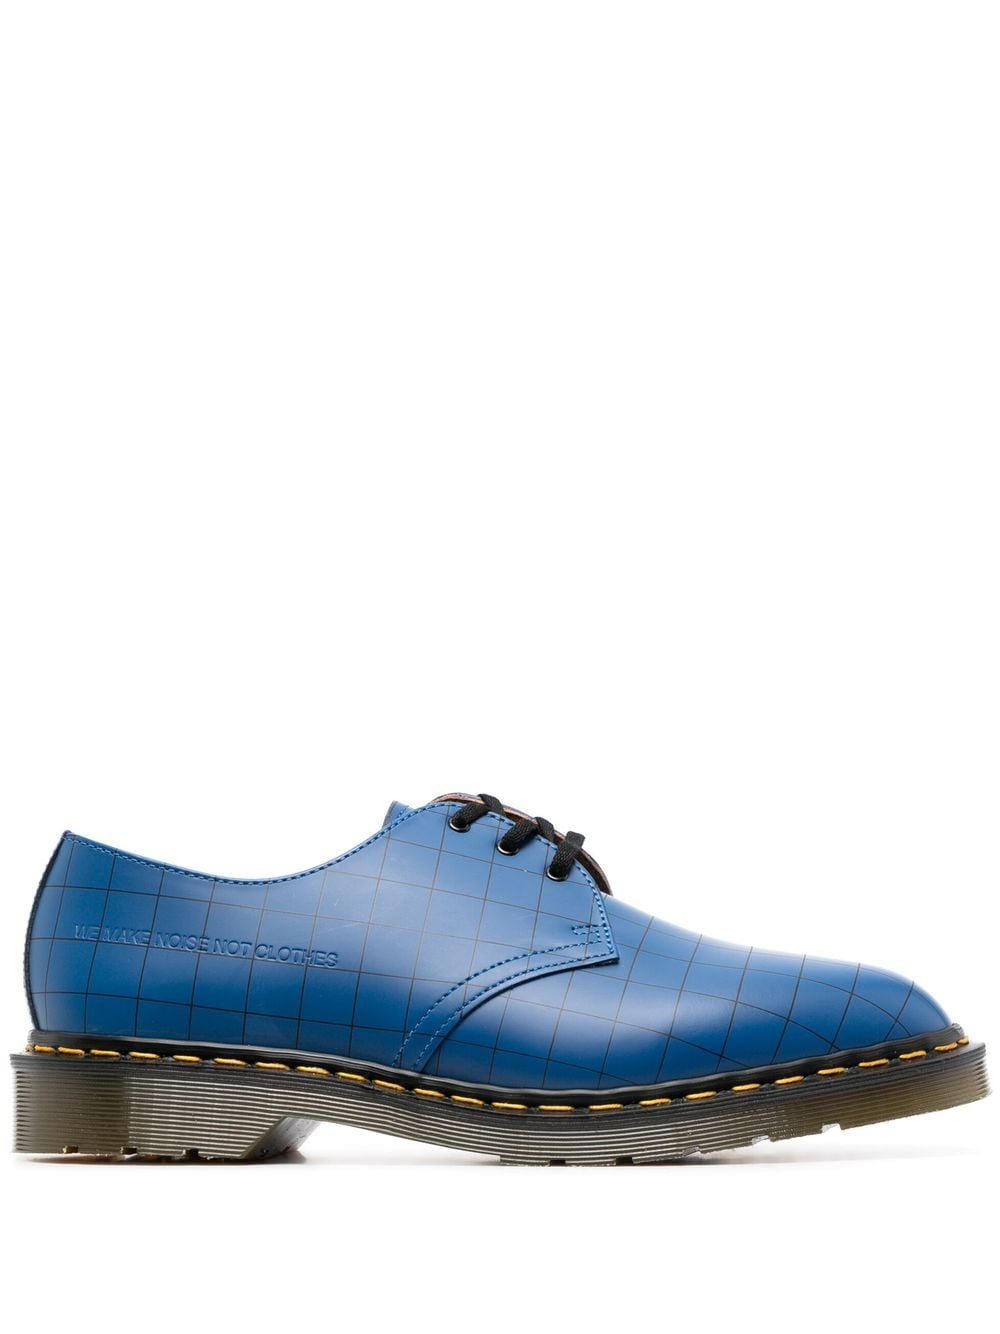 Dr. Martens x Undercover 1461 leather derby shoes - Blue von Dr. Martens